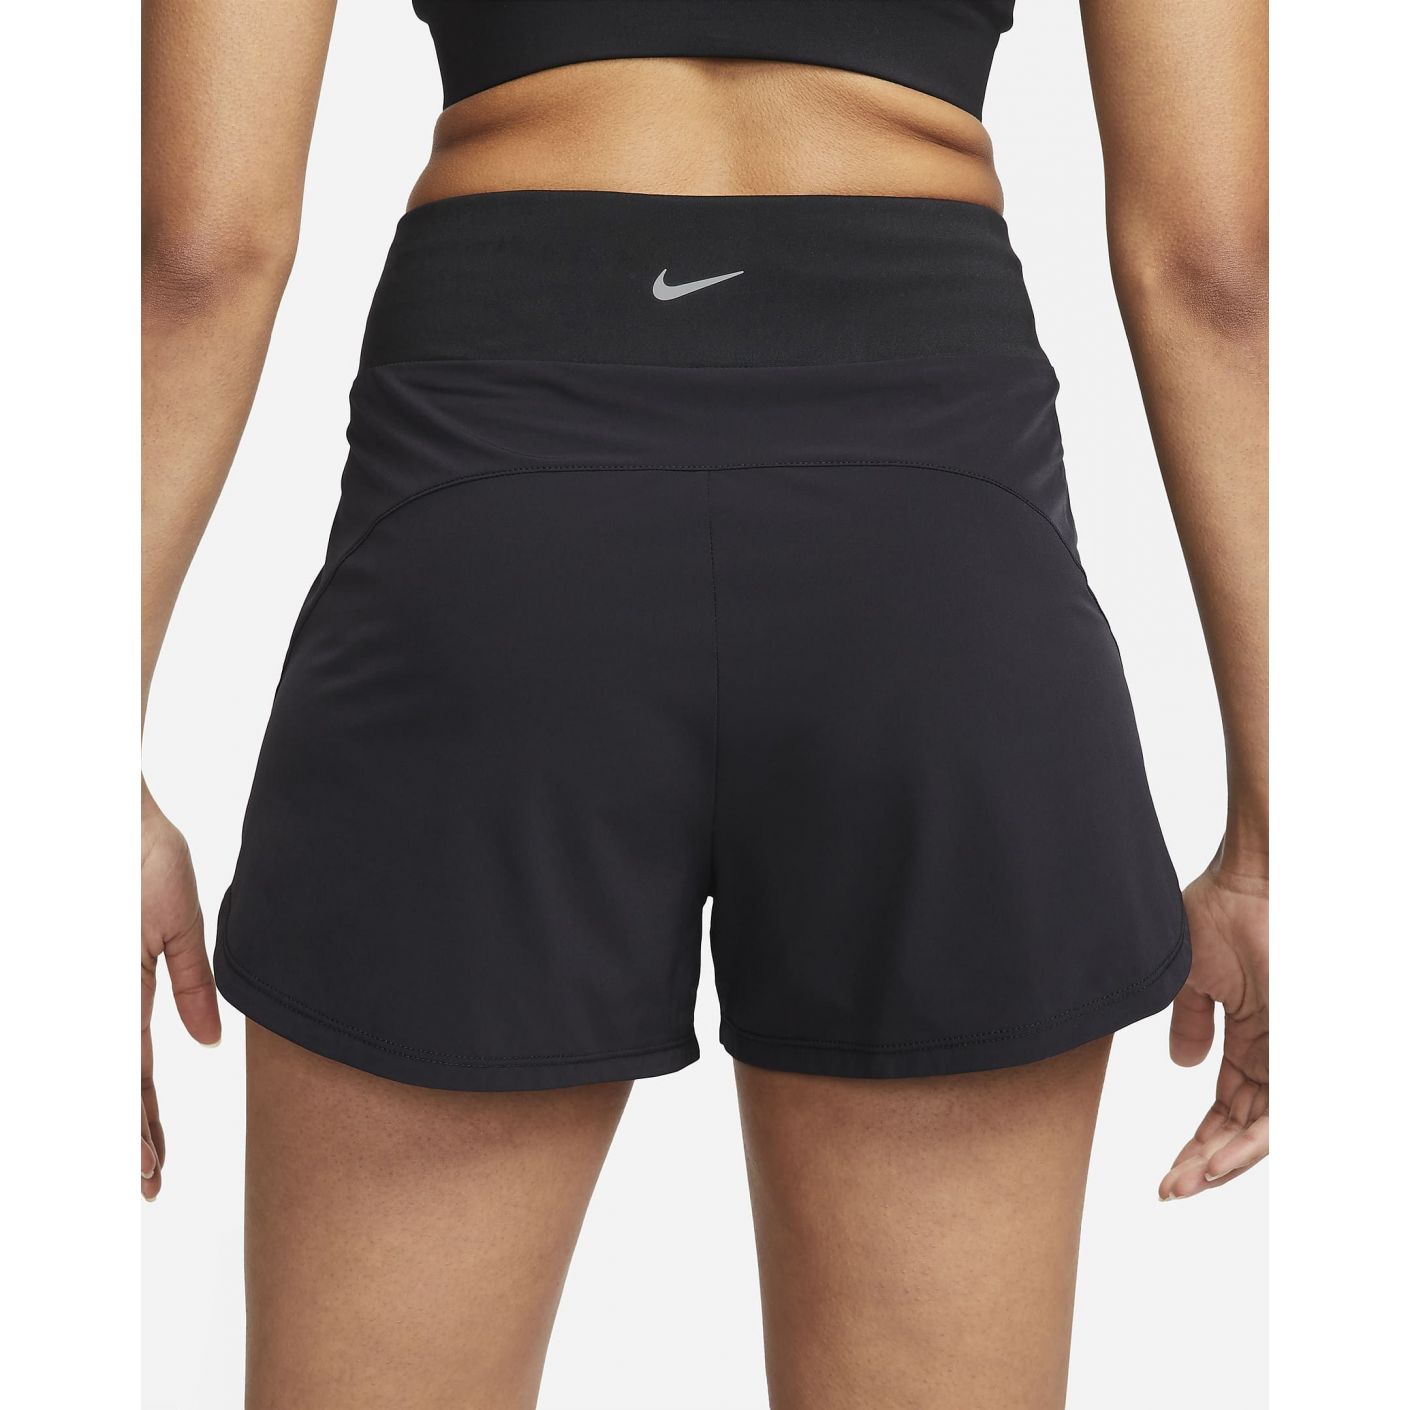 Nike Short Bliss Dri-Fit Vita Alta Neri da Donna